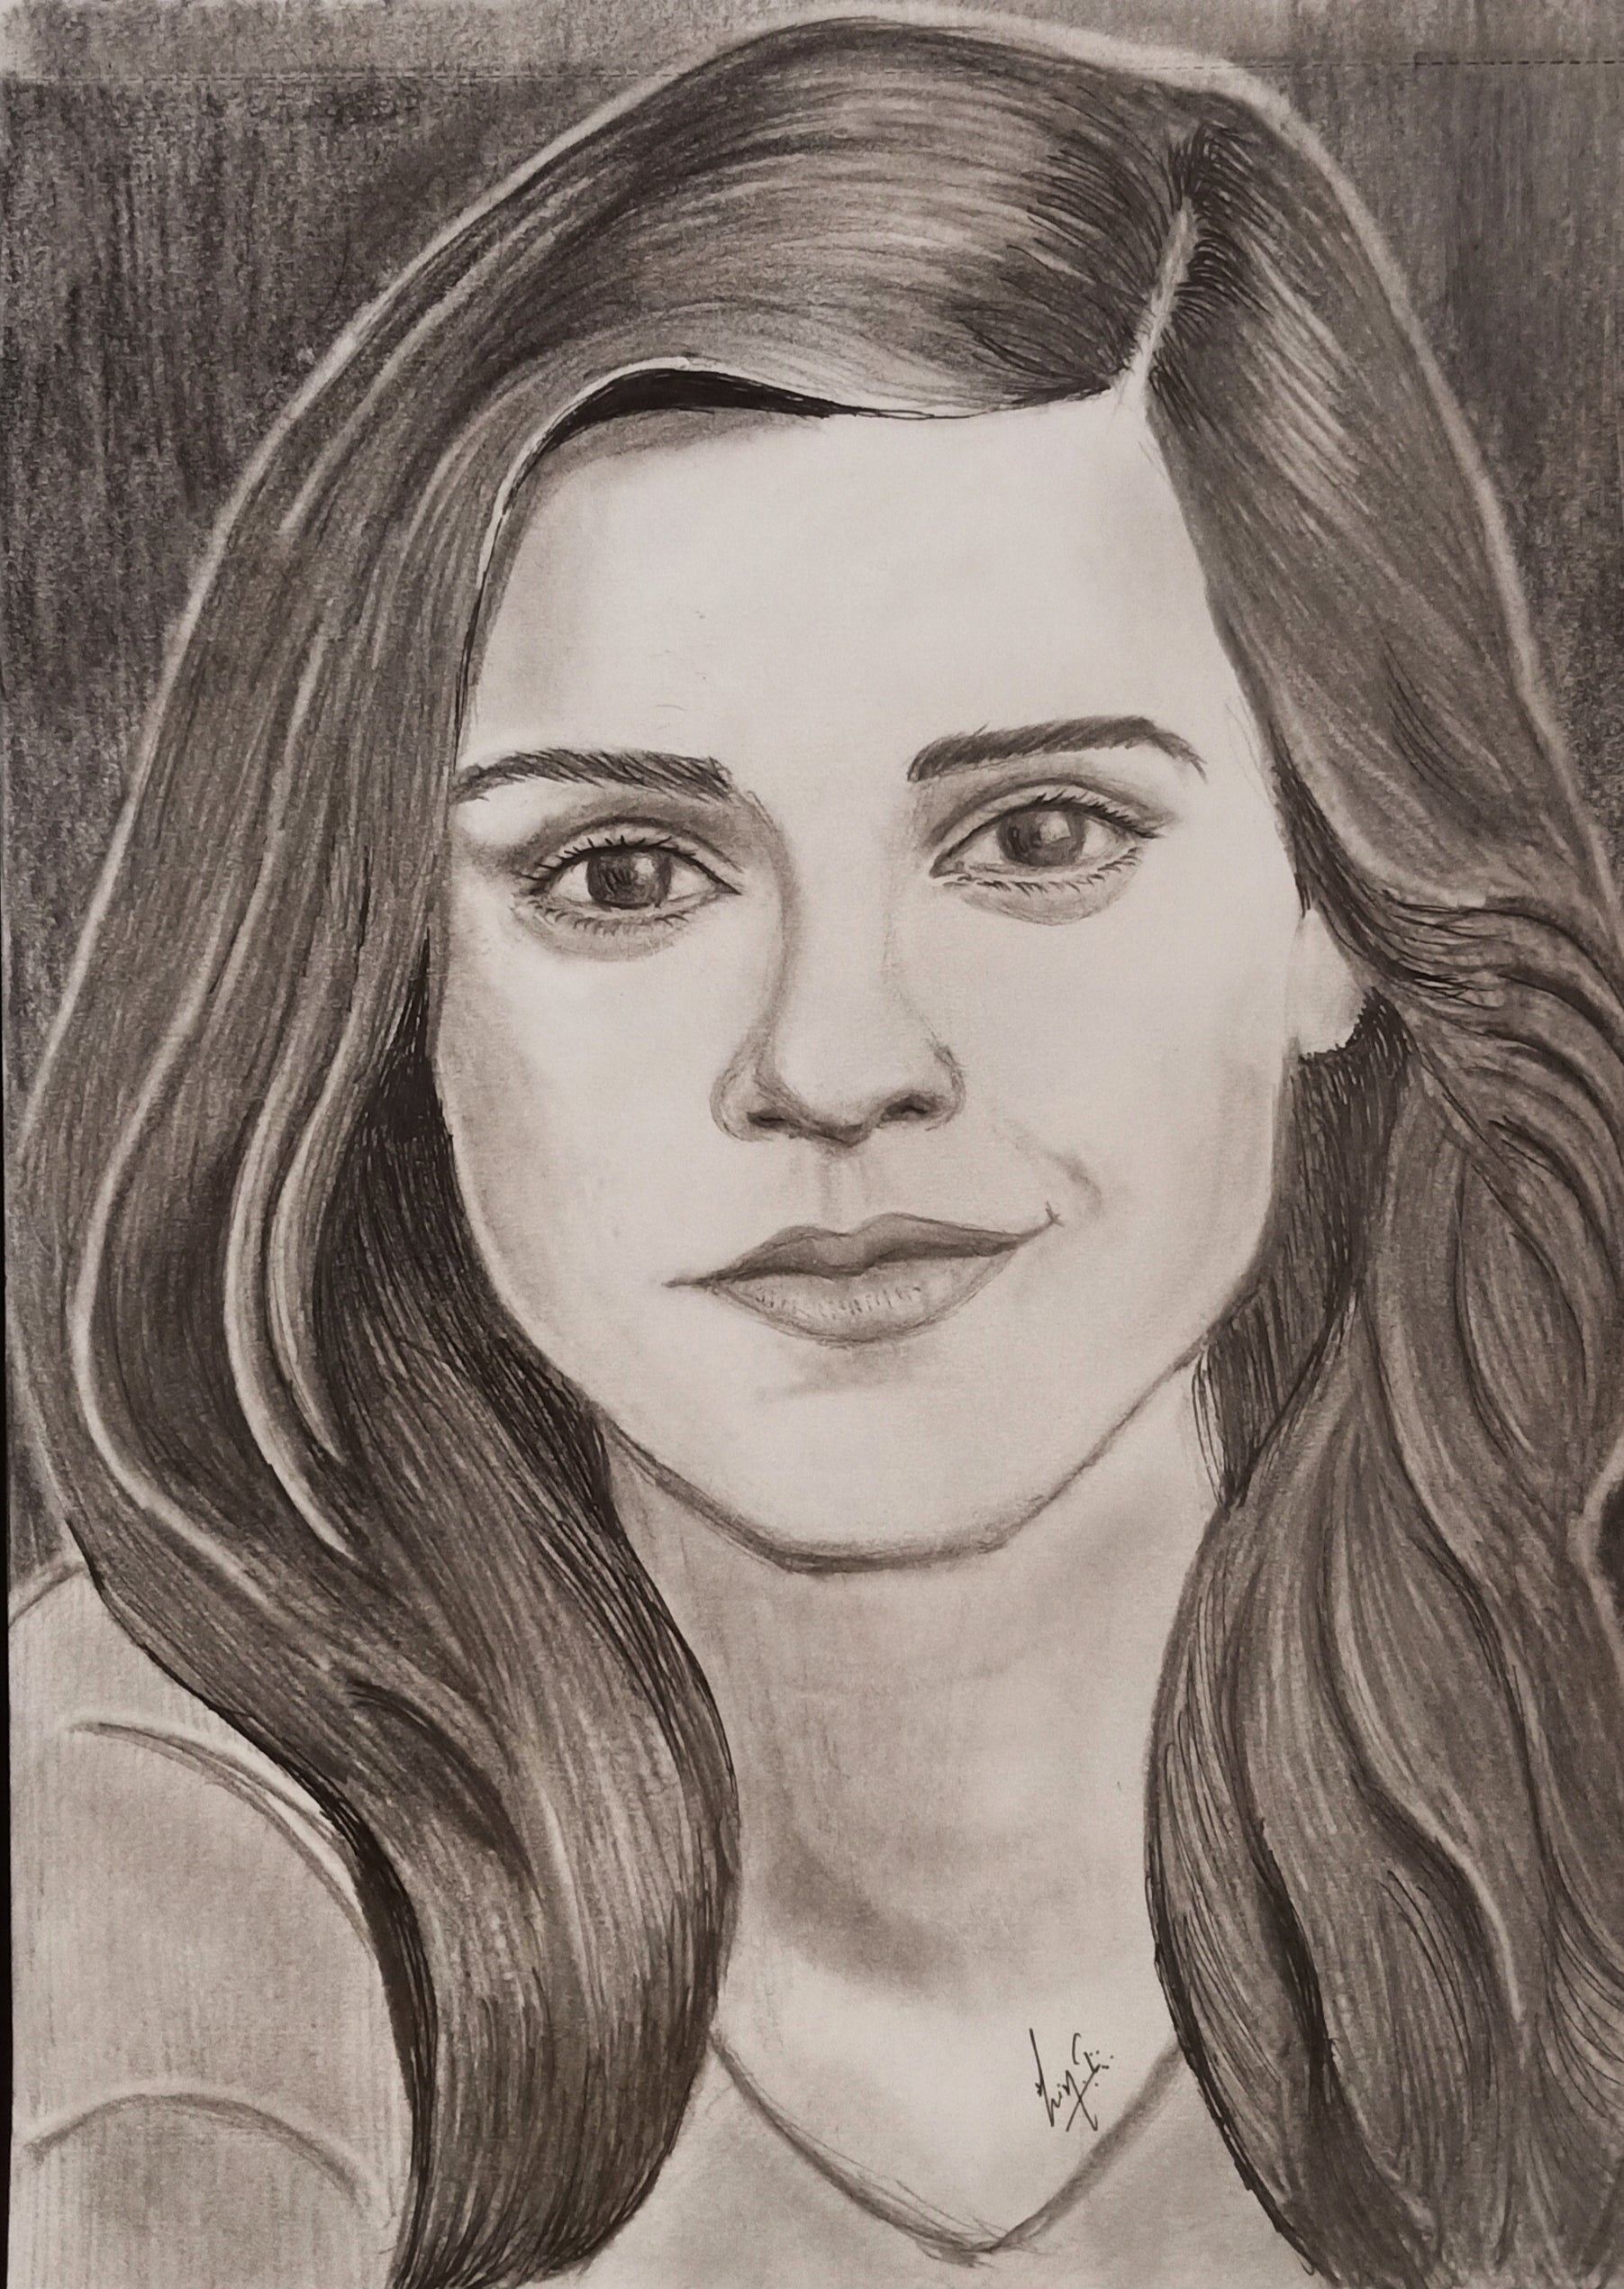 Emma Watson Art Print, Limited Edition A4 Print, Portrait Artwork,  Celebrity Portrait, Portrait Drawing, Realistic Portrait - Etsy